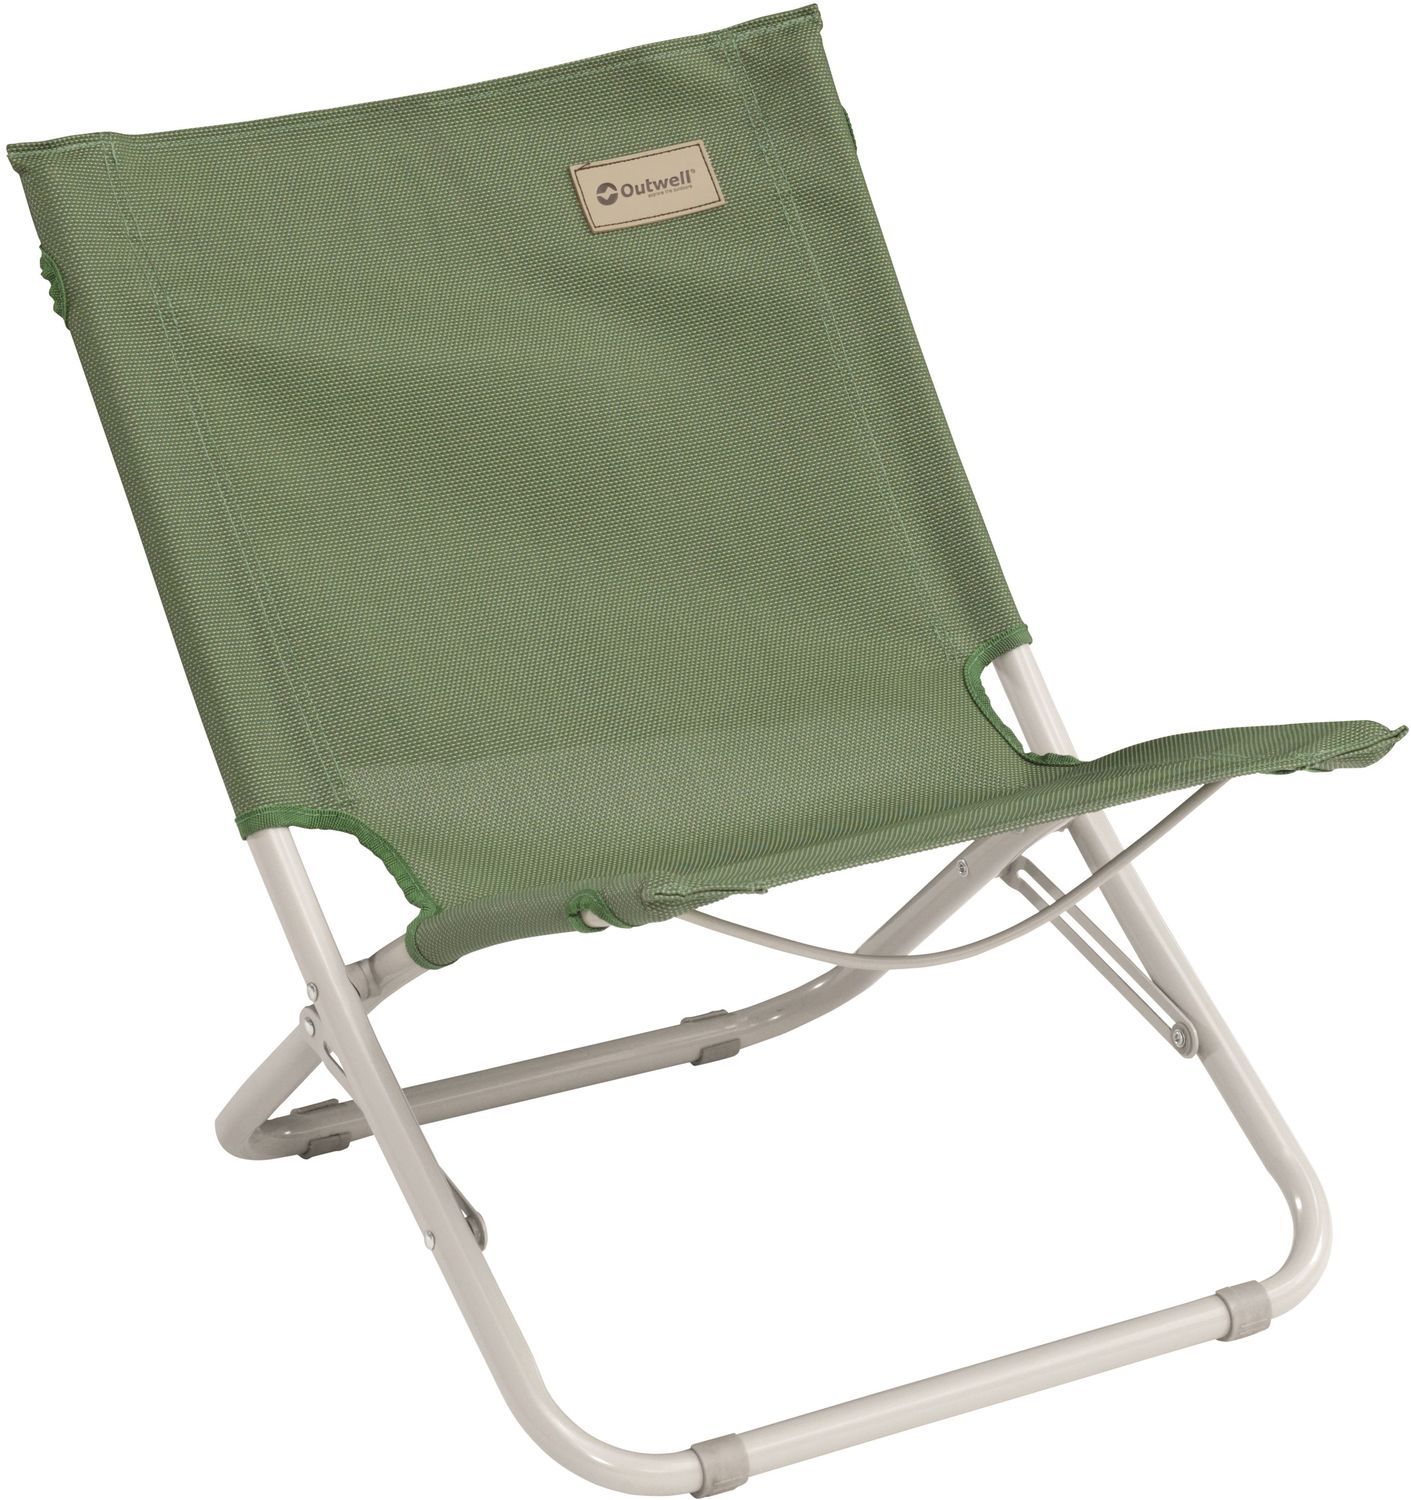 Outwell Sauntons Chair - Green Vineyard